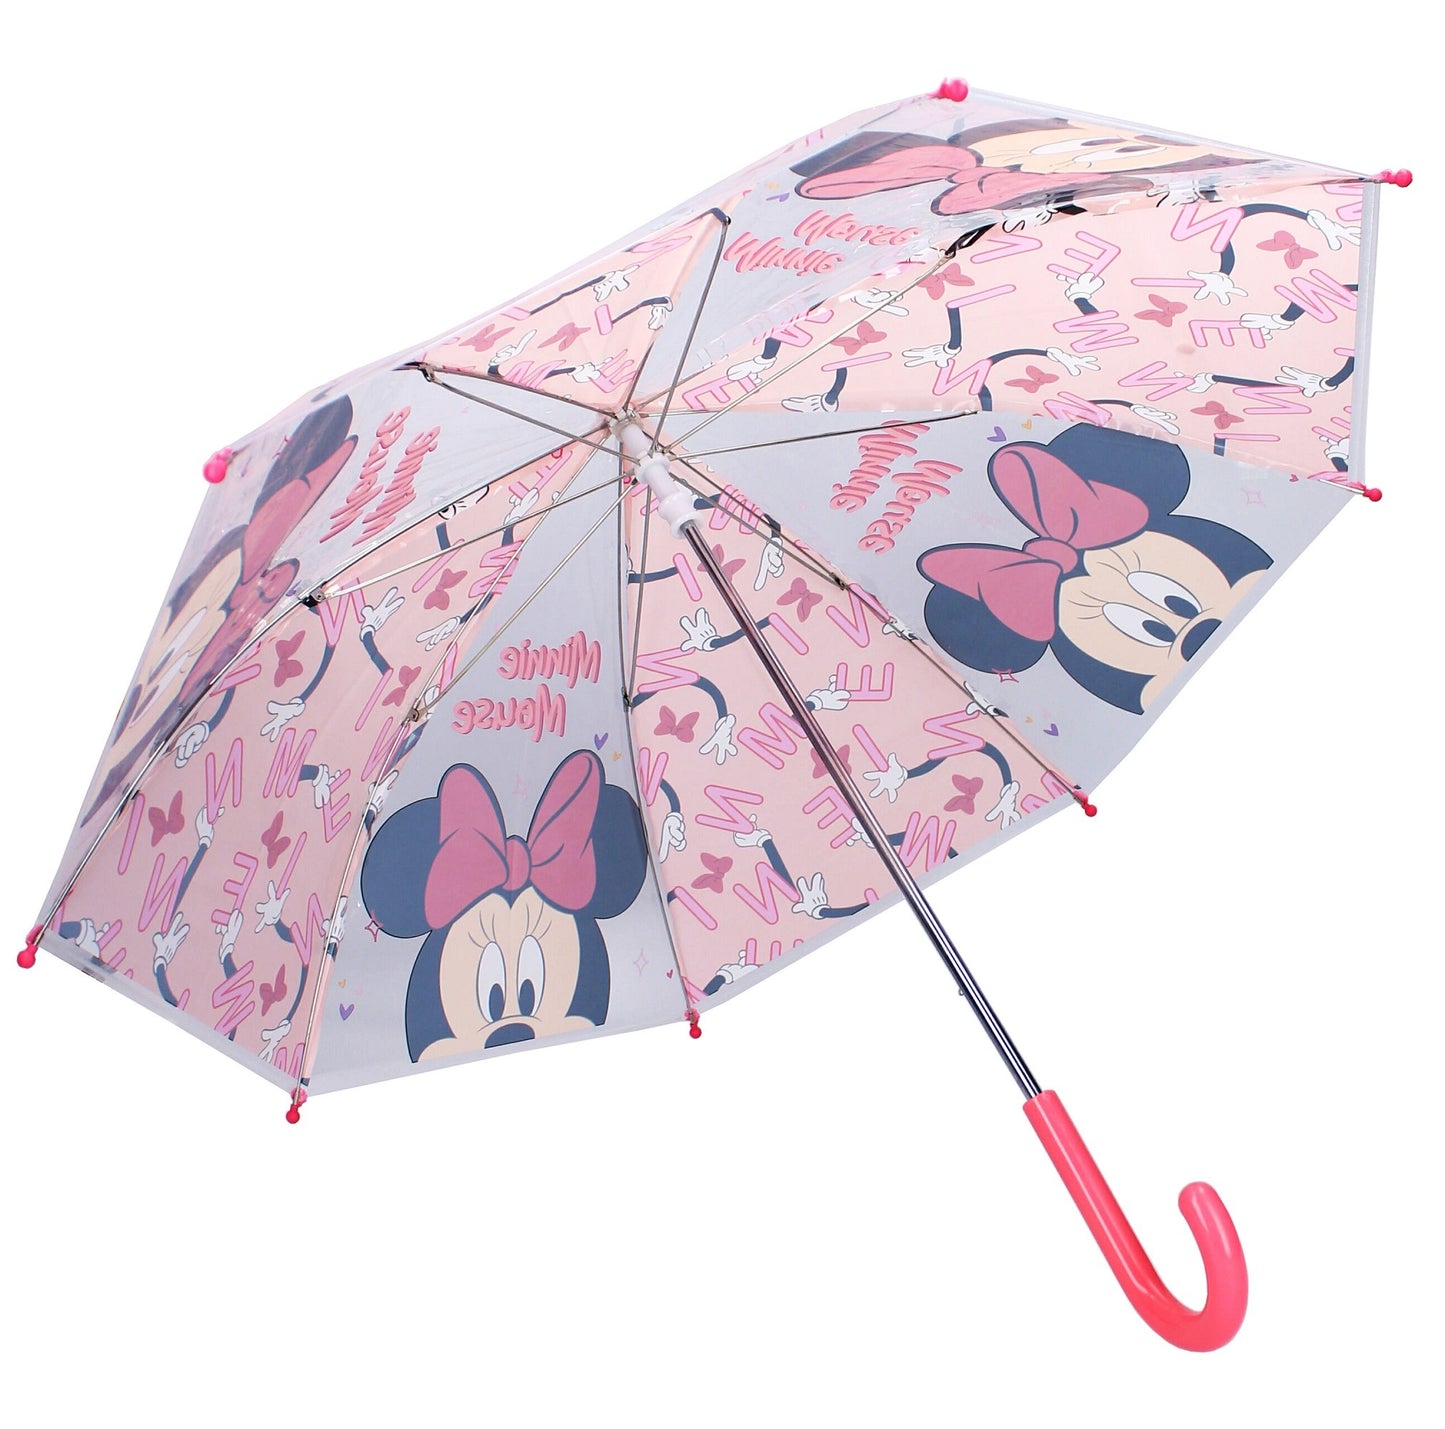 Voeg wat plezier toe aan regenachtige dagen met deze vrolijke Minnie Mouse paraplu, compleet met een gevarieerde print en kleine dopjes aan de uiteinden van de ribben voor extra veiligheid.